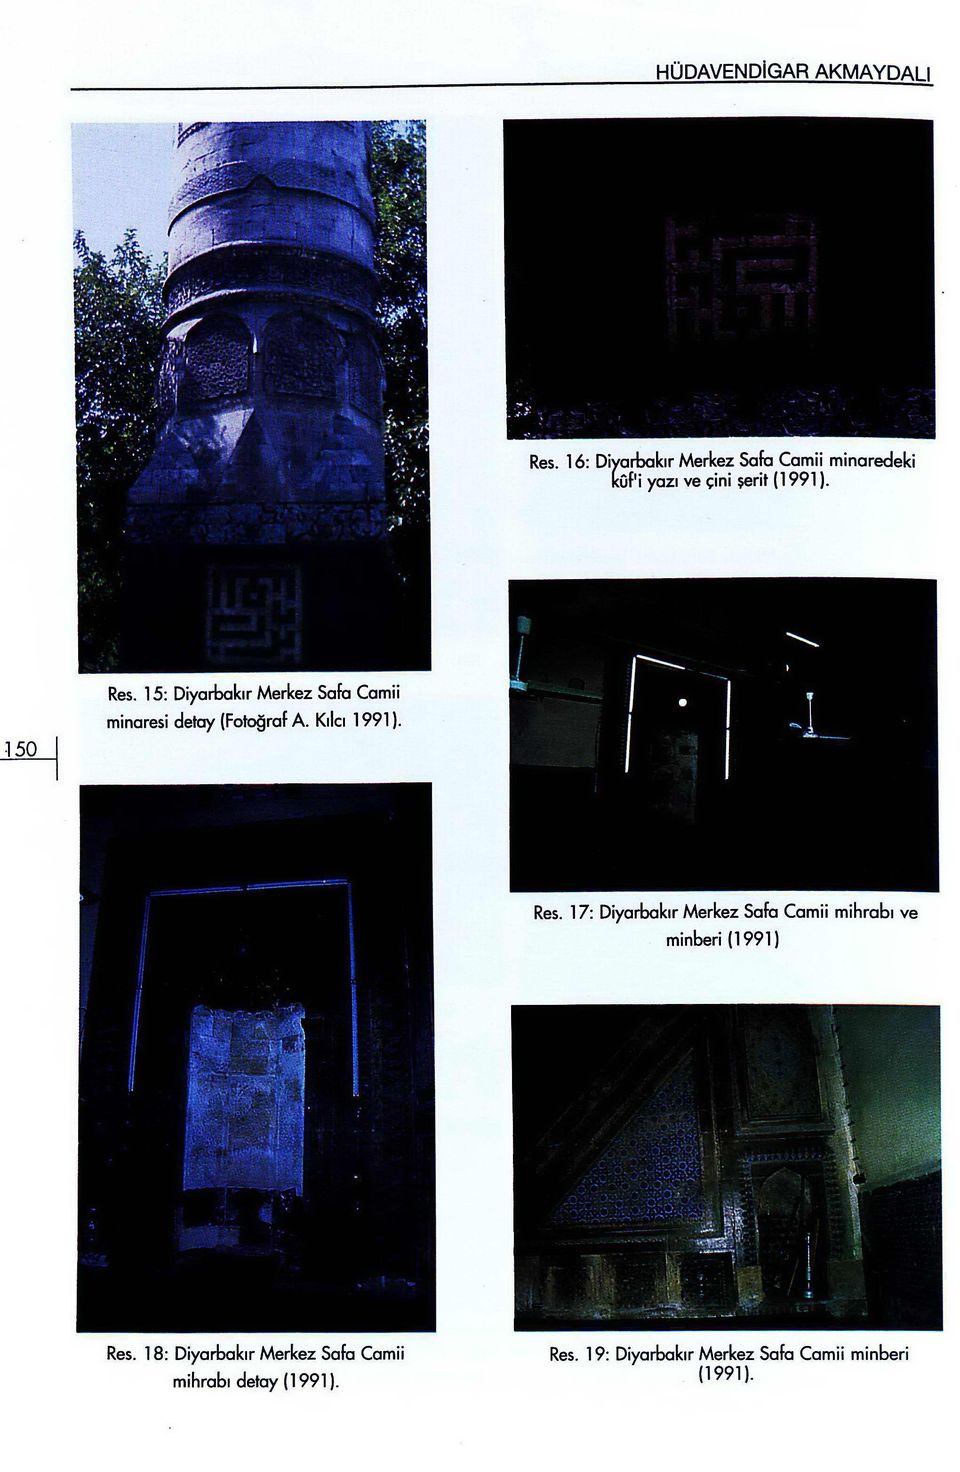 17: Diyarbakır Merkez Safa Camii mihrabı ve minberi (1991) Res.